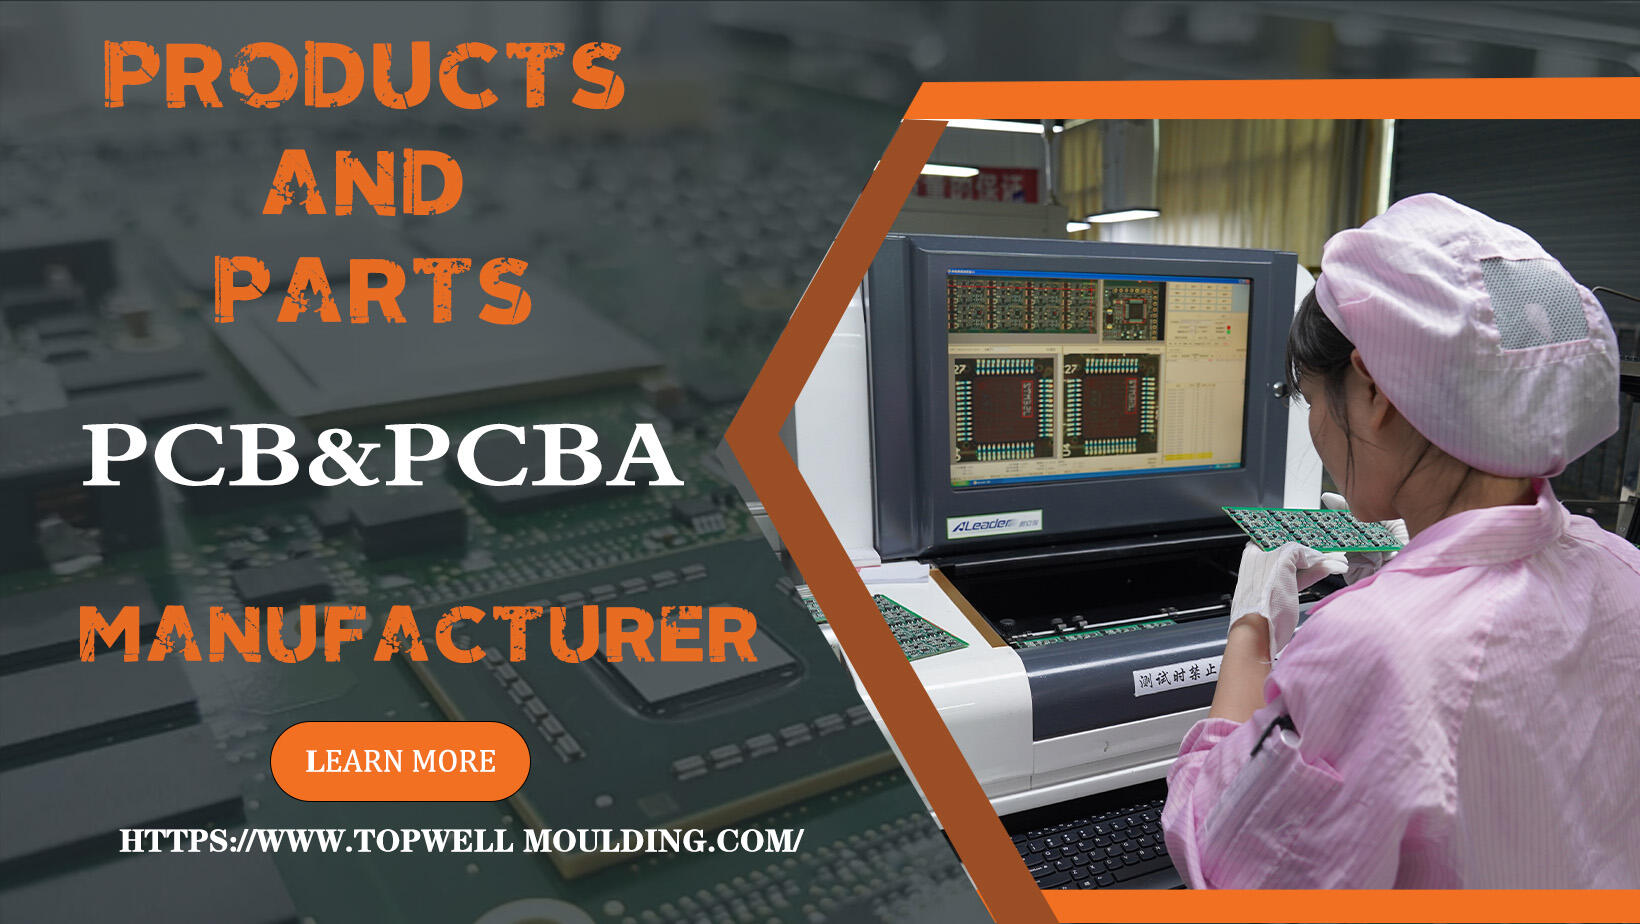 Thiết kế PCBA;PCB;PCB (bảng mạch in), PCBA (lắp ráp PCB) và OEM